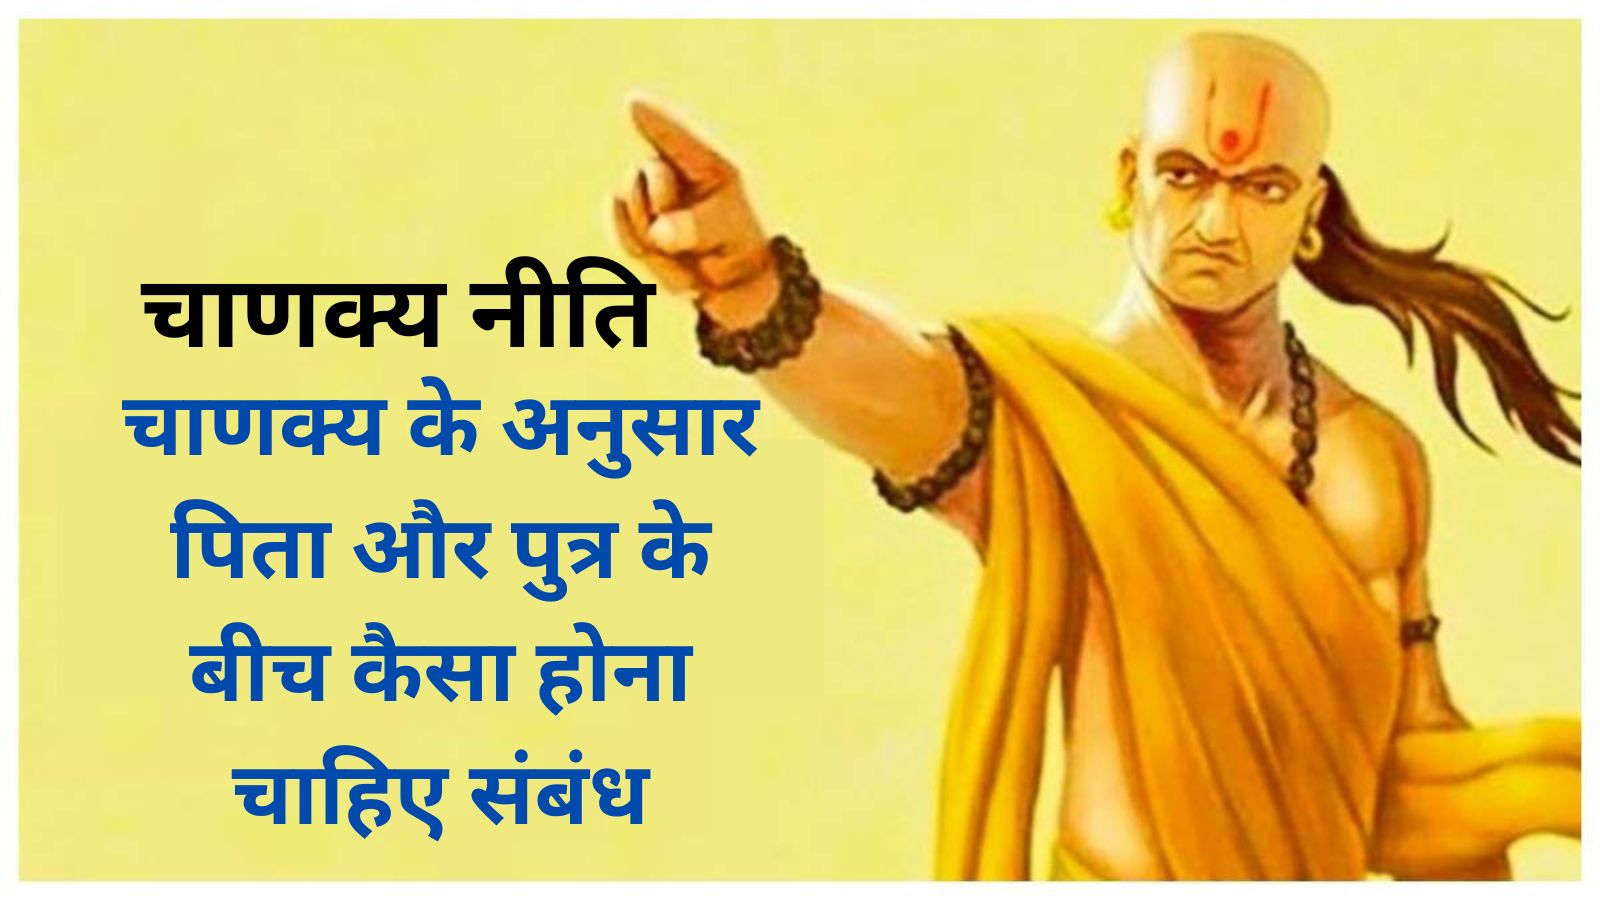 Chanakya Niti: चाणक्य के अनुसार पिता और पुत्र के बीच कैसा होना चाहिए संबंध,जानिए चाणक्य के विचार